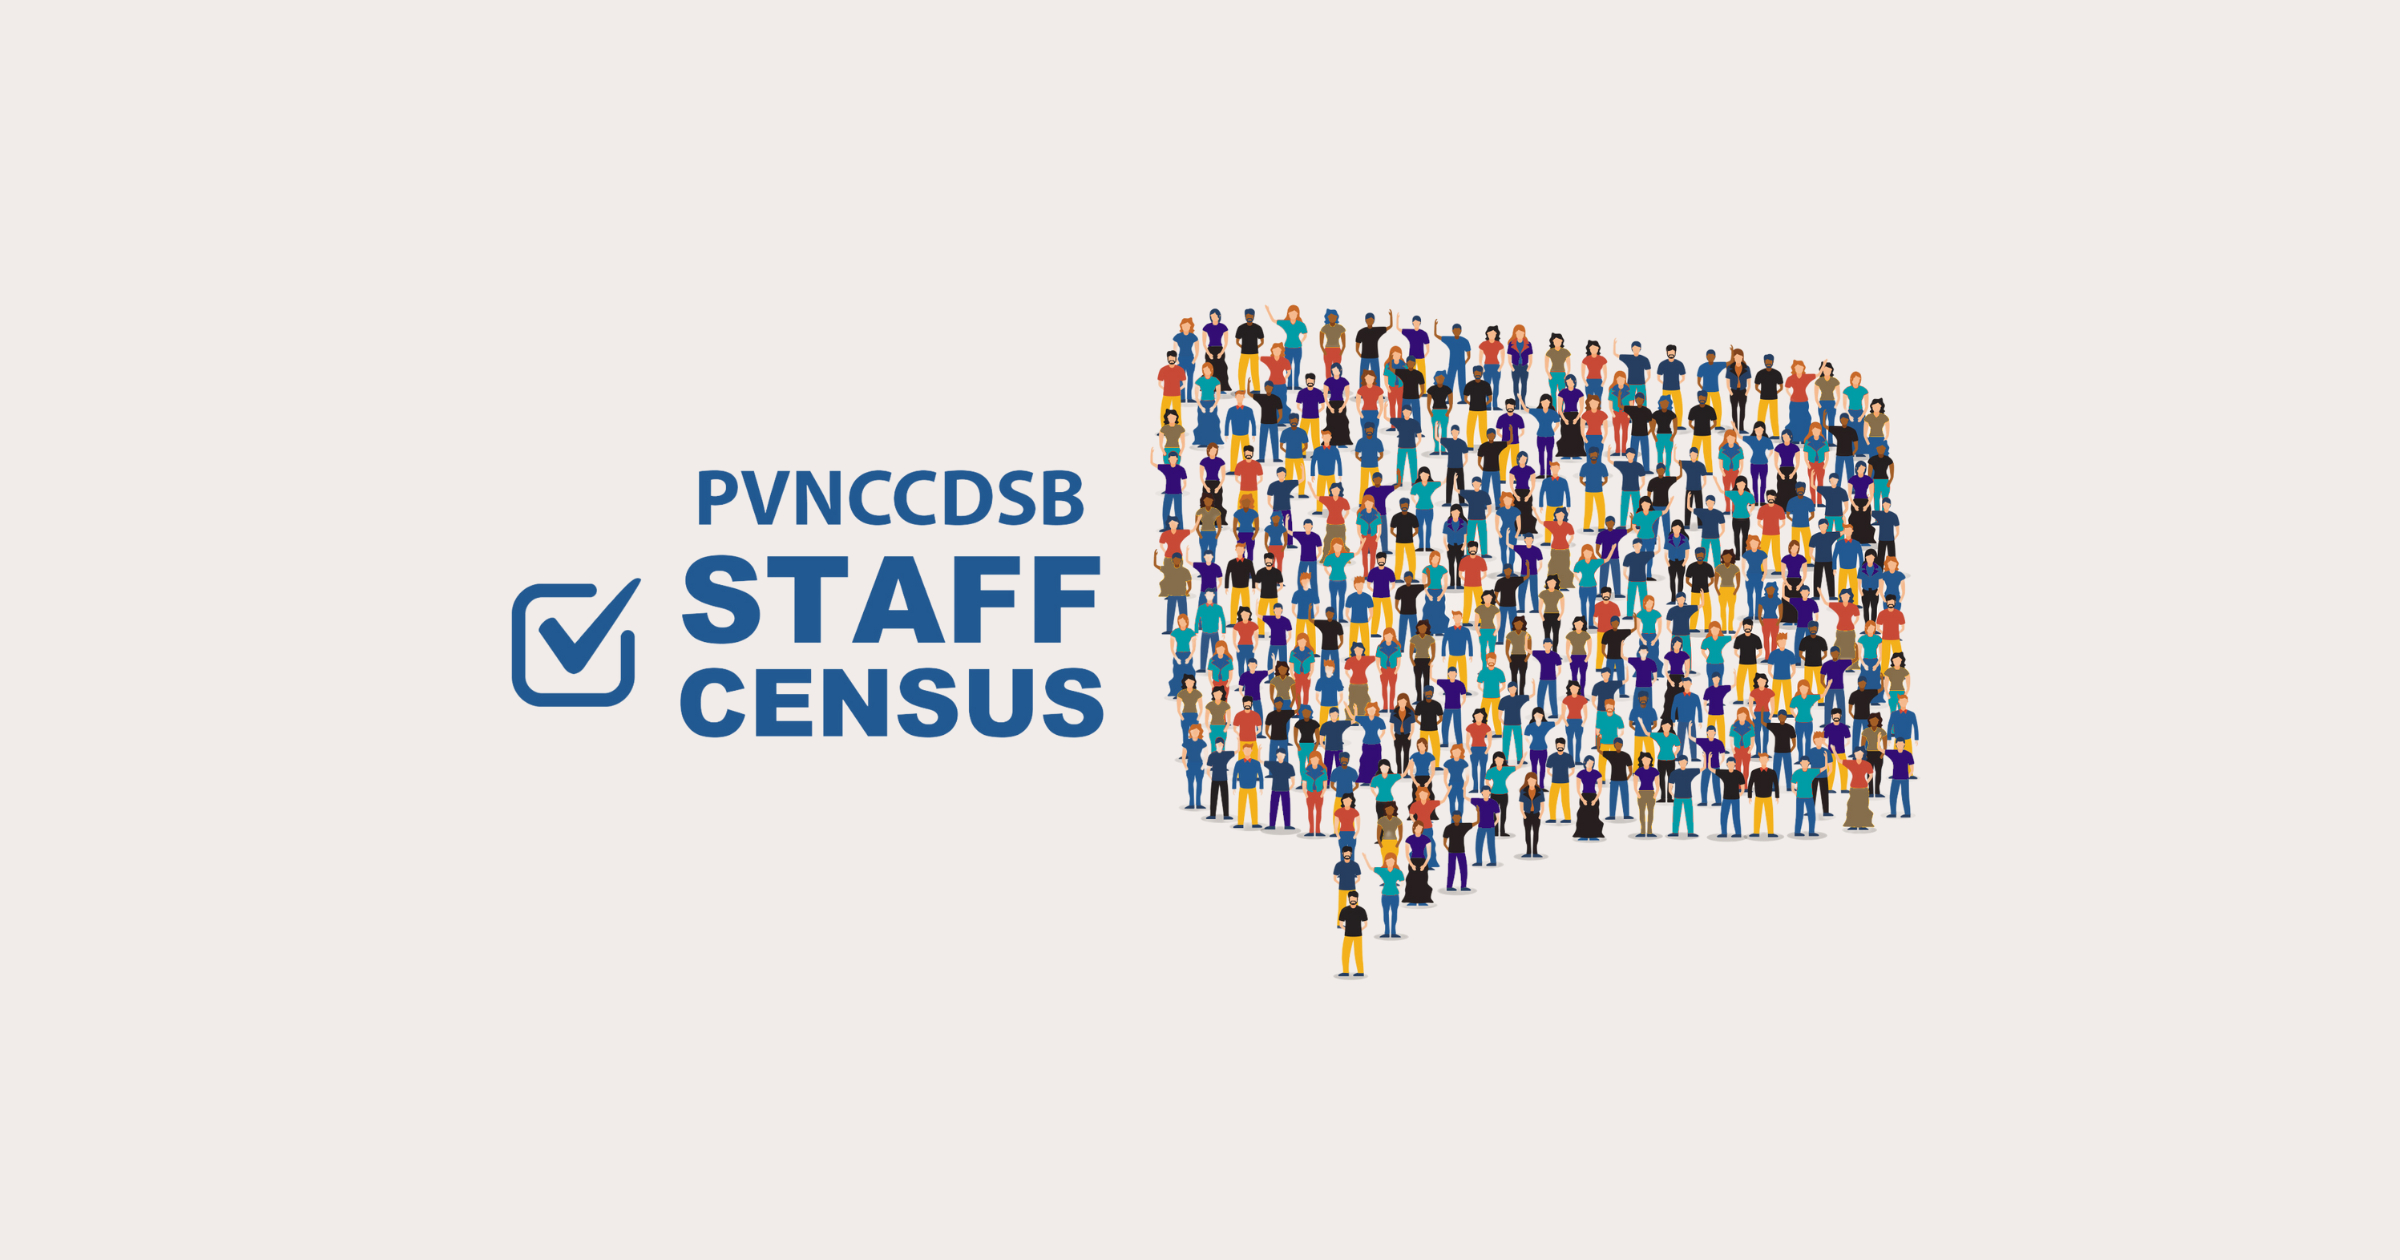 PVNCCDSB Staff Census